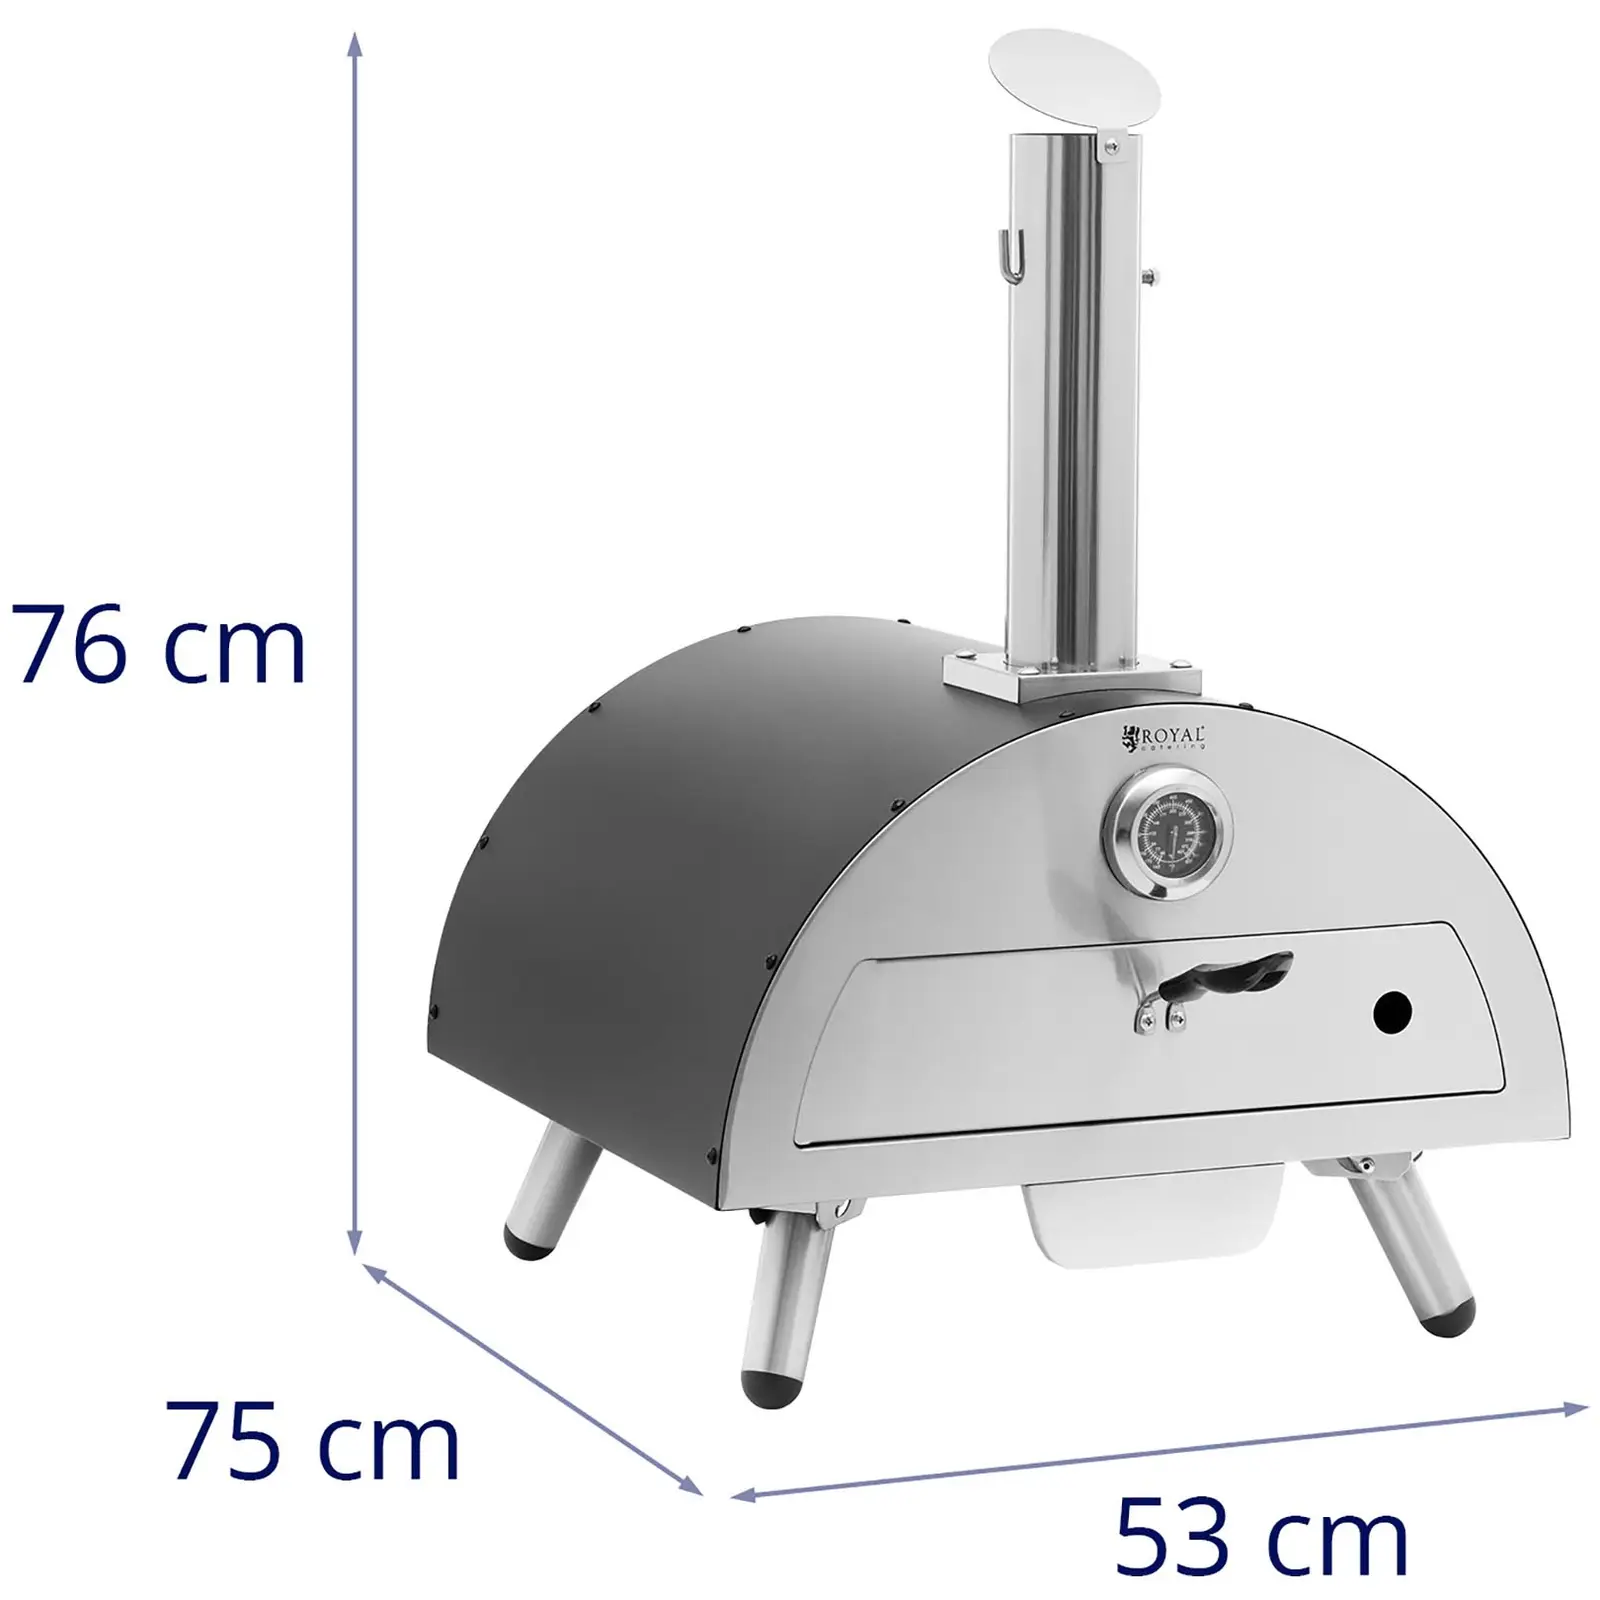 Holz-Pizzaofen - Cordierit - 430 °C - Ø 33 cm - Royal Catering